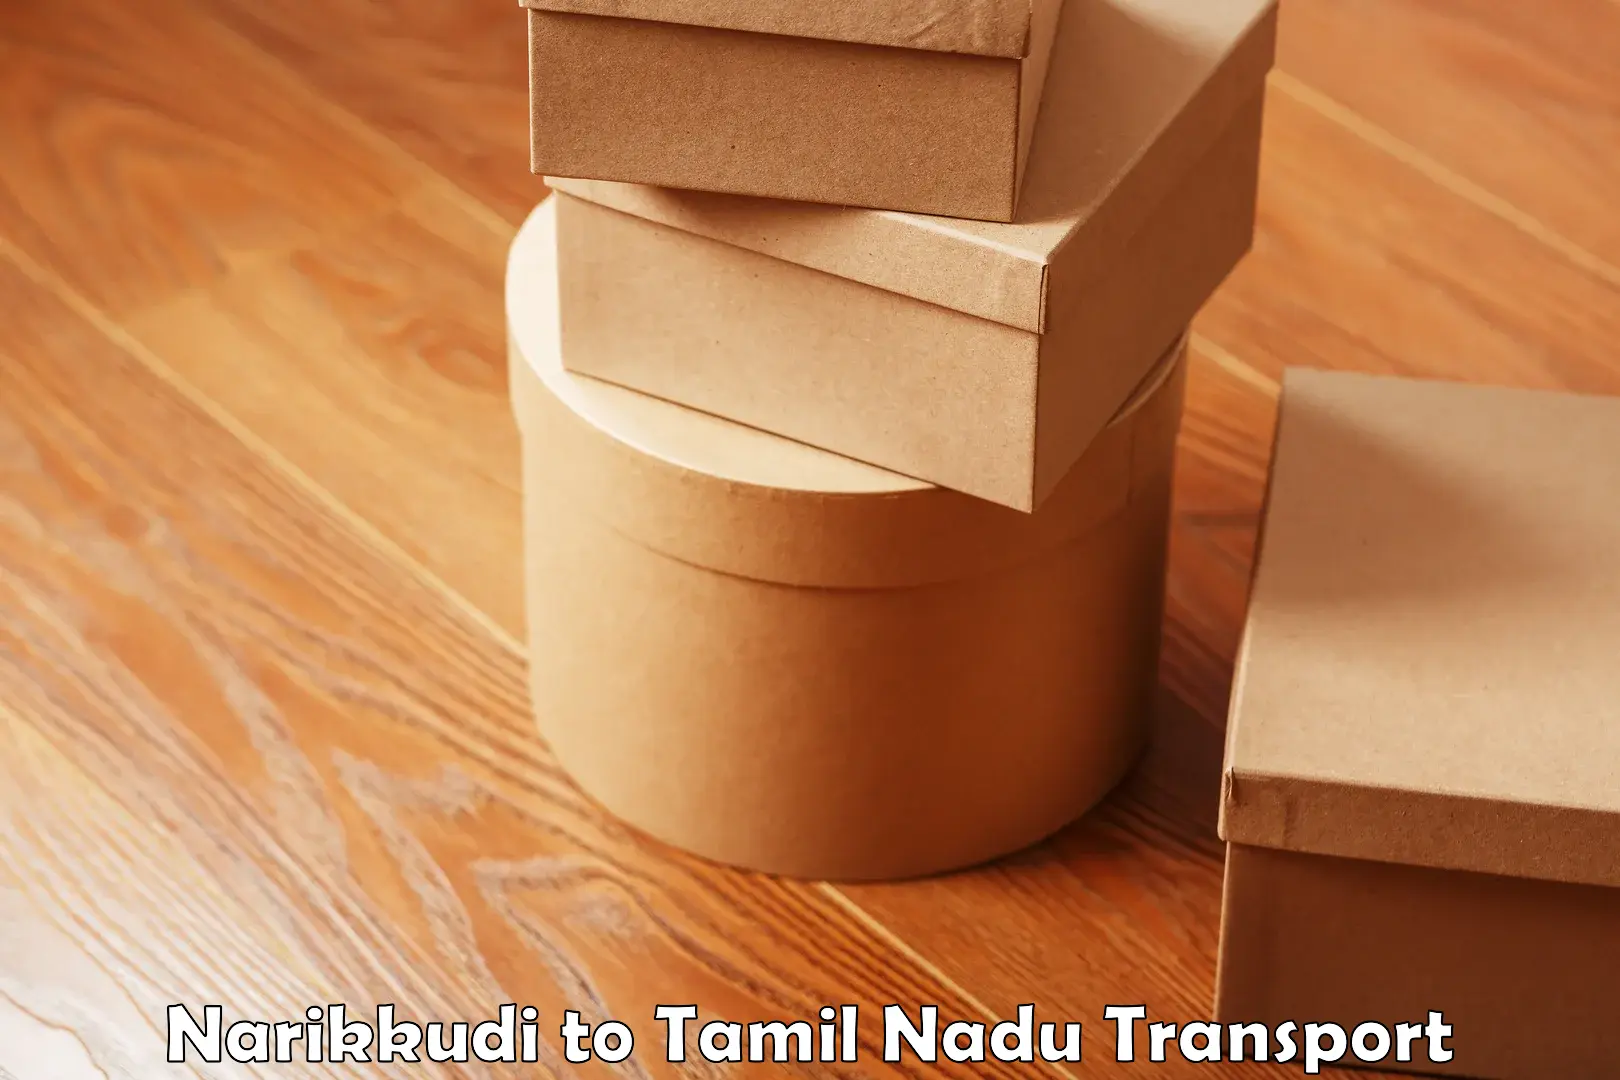 Transportation services Narikkudi to Sriperumbudur